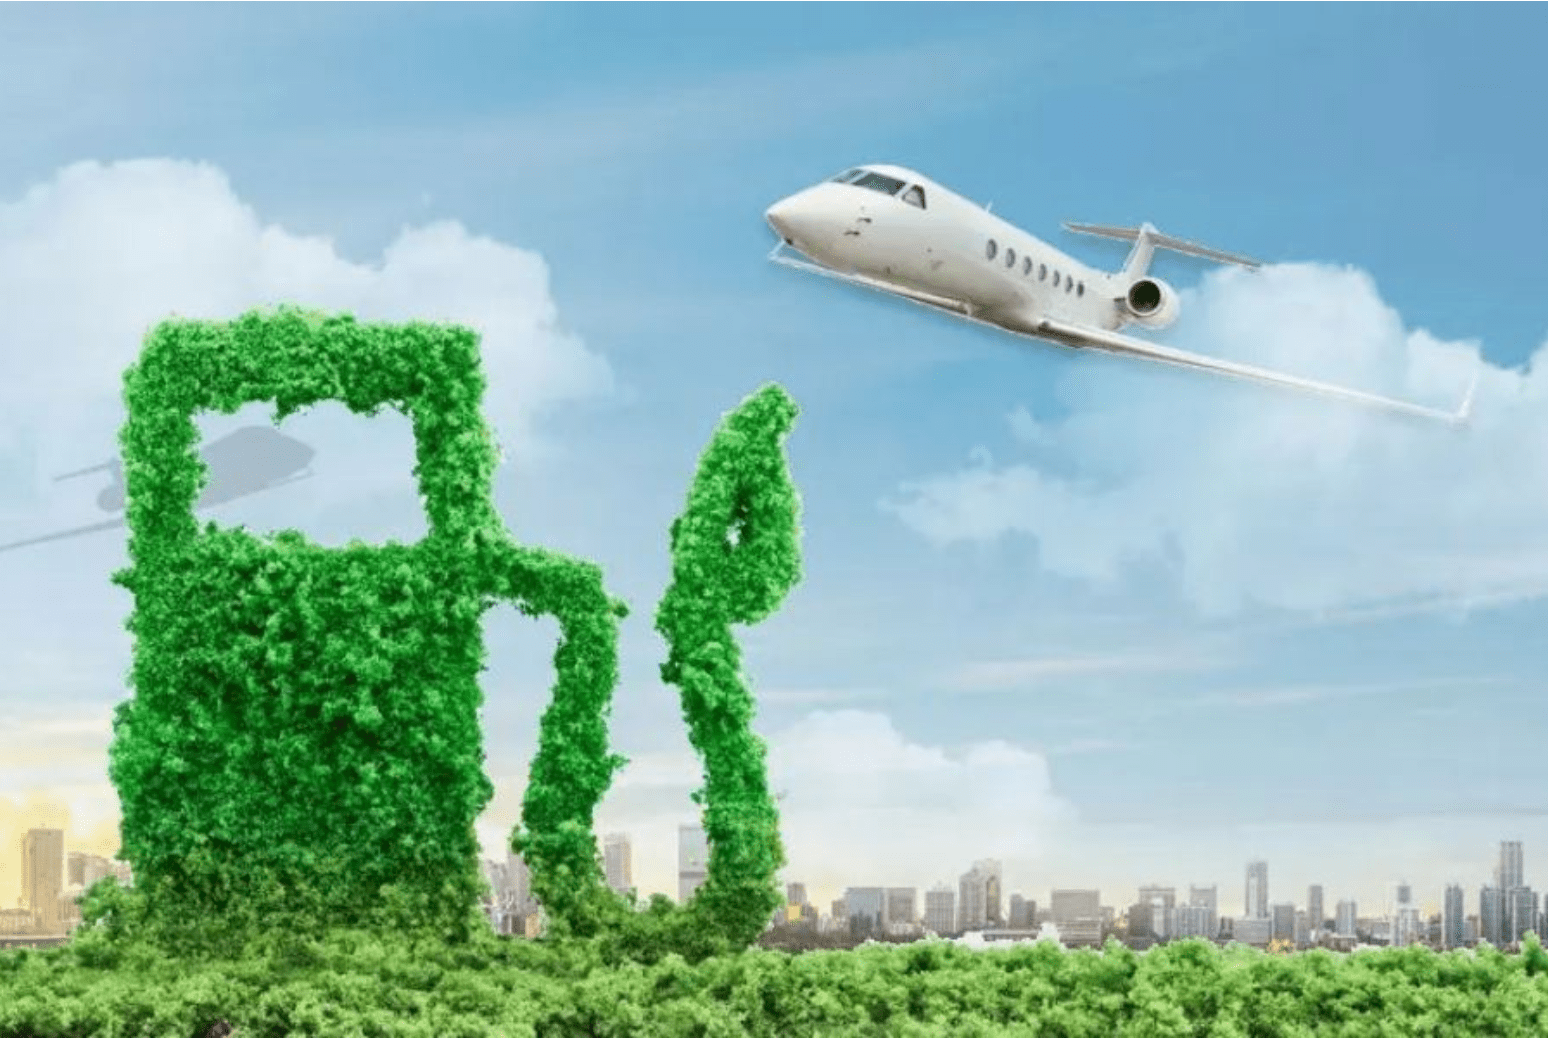 Nếu tăng tốc chuyển sang sử dụng nhiên liệu bền vững, ngành hàng không không có sự lựa chọn nào khác ngoài việc tăng giá vé máy bay để bù đắp chi phí tăng thêm. Ảnh: ijet.aero